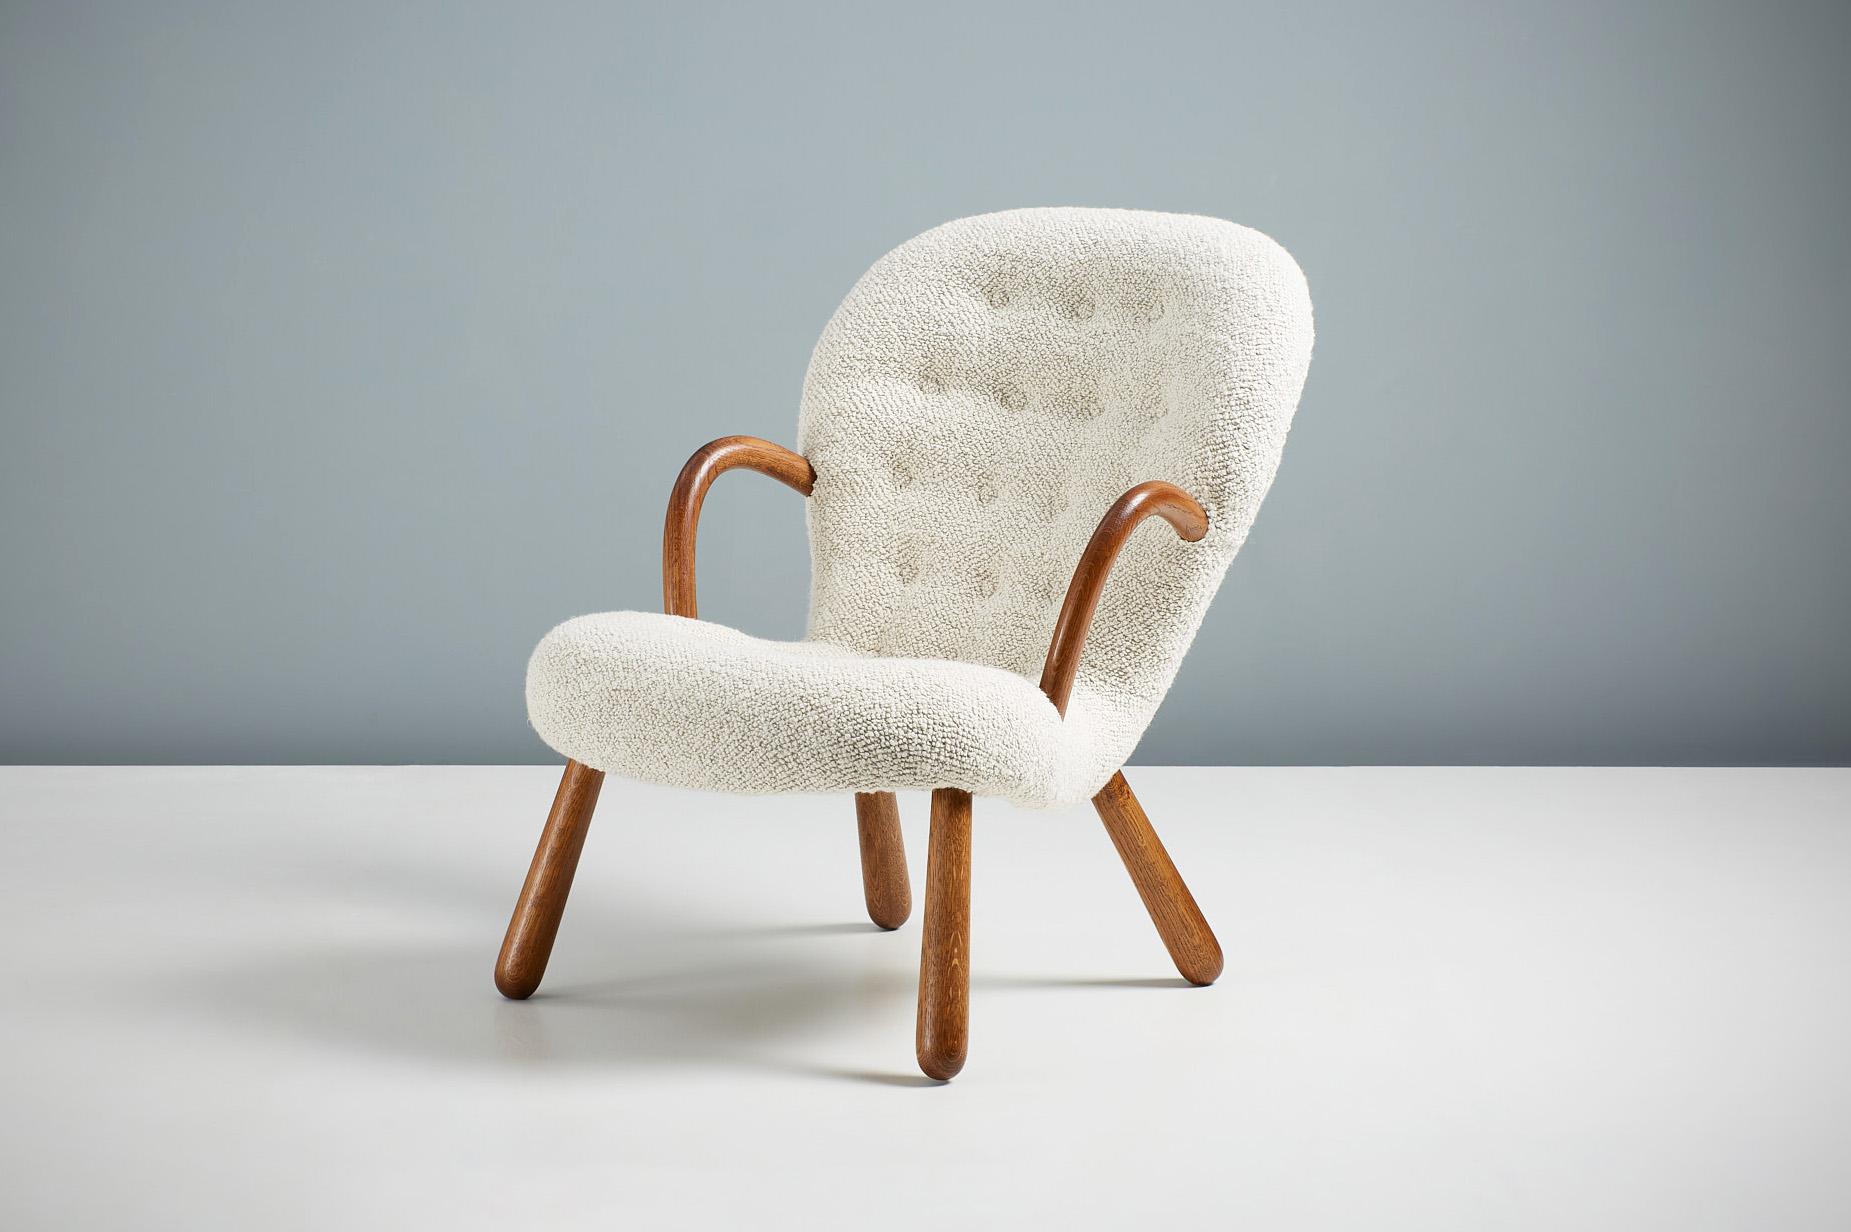 Offizielle Neuauflage des legendären Clam Chair von Arnold Madsen.

Dagmar ist stolz darauf, in Zusammenarbeit mit dem Nachlass von Arnold Madsen den Clam Chair - eines der beliebtesten und begehrtesten skandinavischen Möbeldesigns des 20.